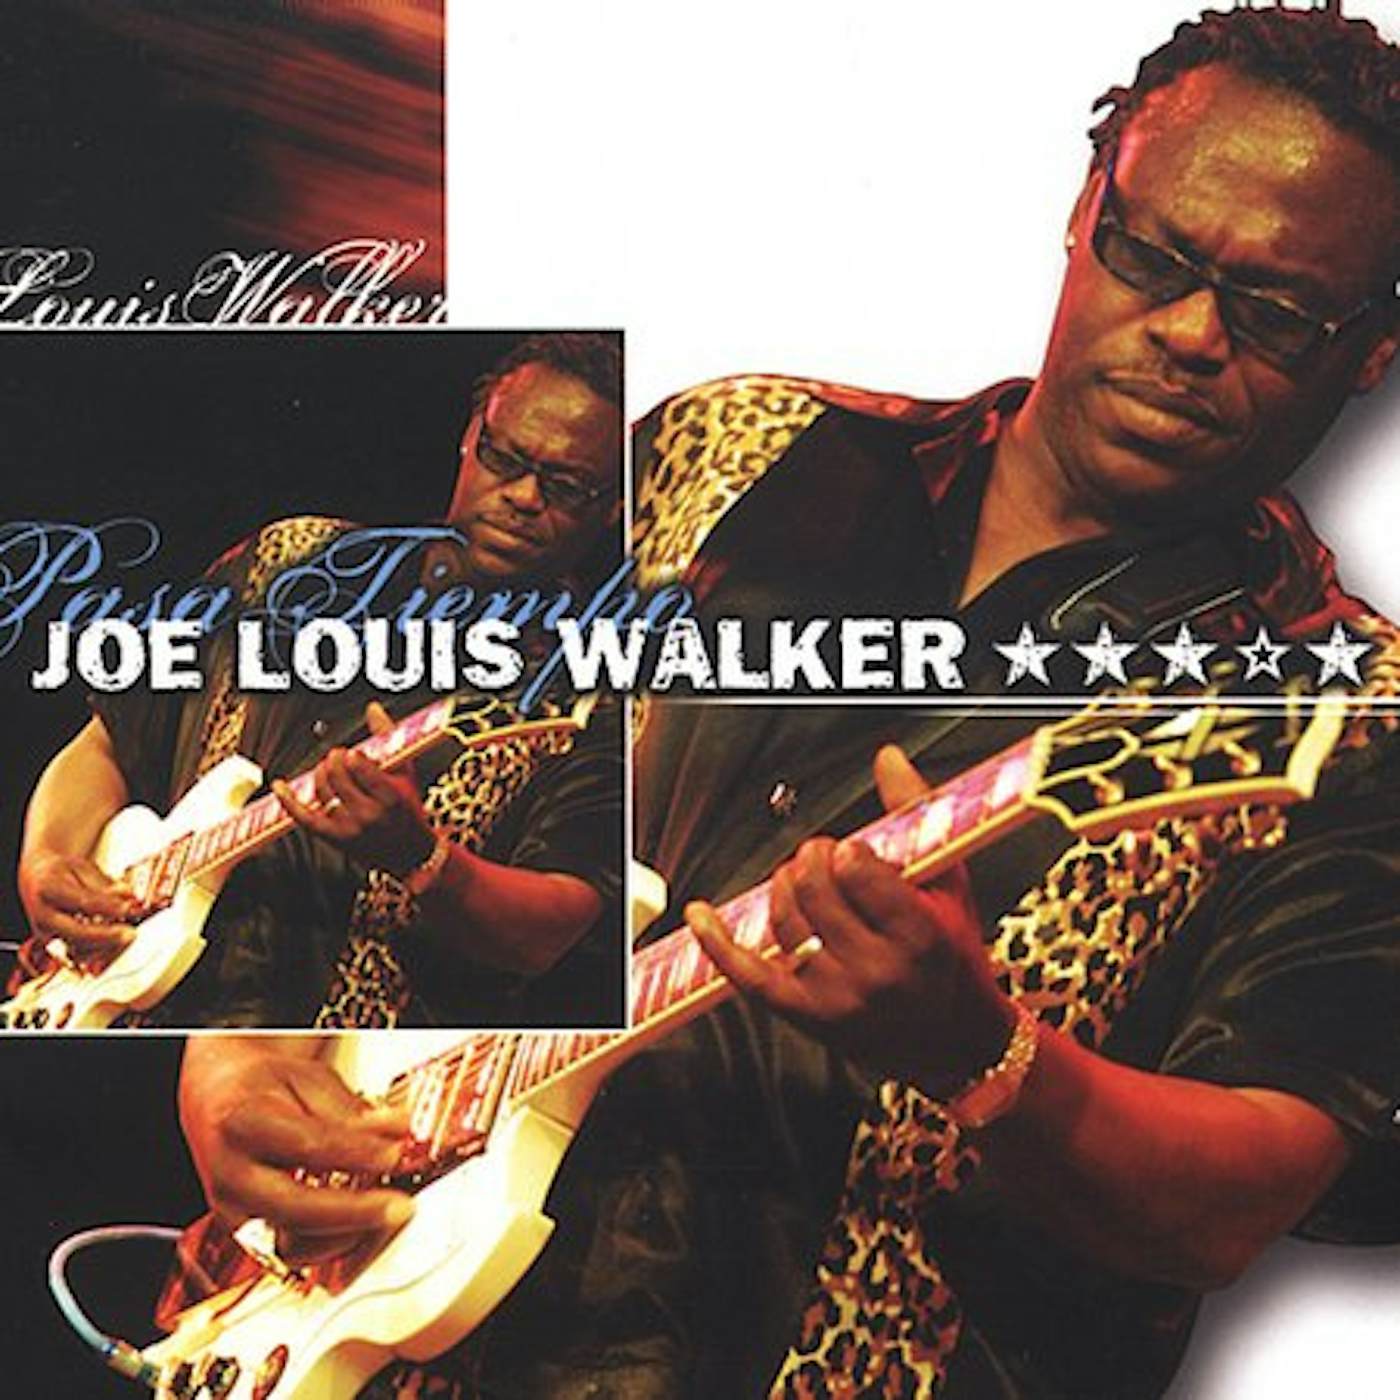 Joe Louis Walker PASA TIEMPO CD